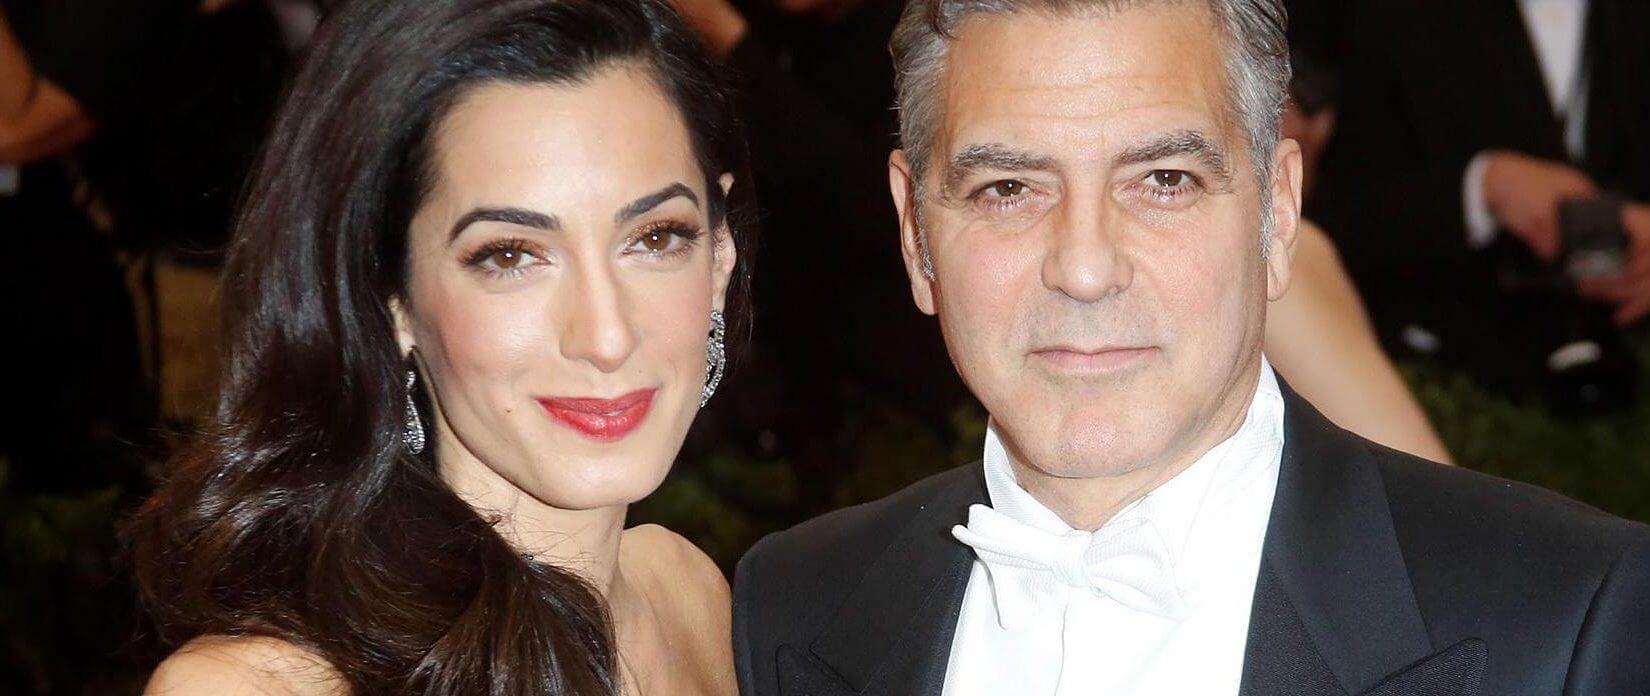 O George Clooney επιβεβαιώνει την εγκυμοσύνη της Αμάλ!